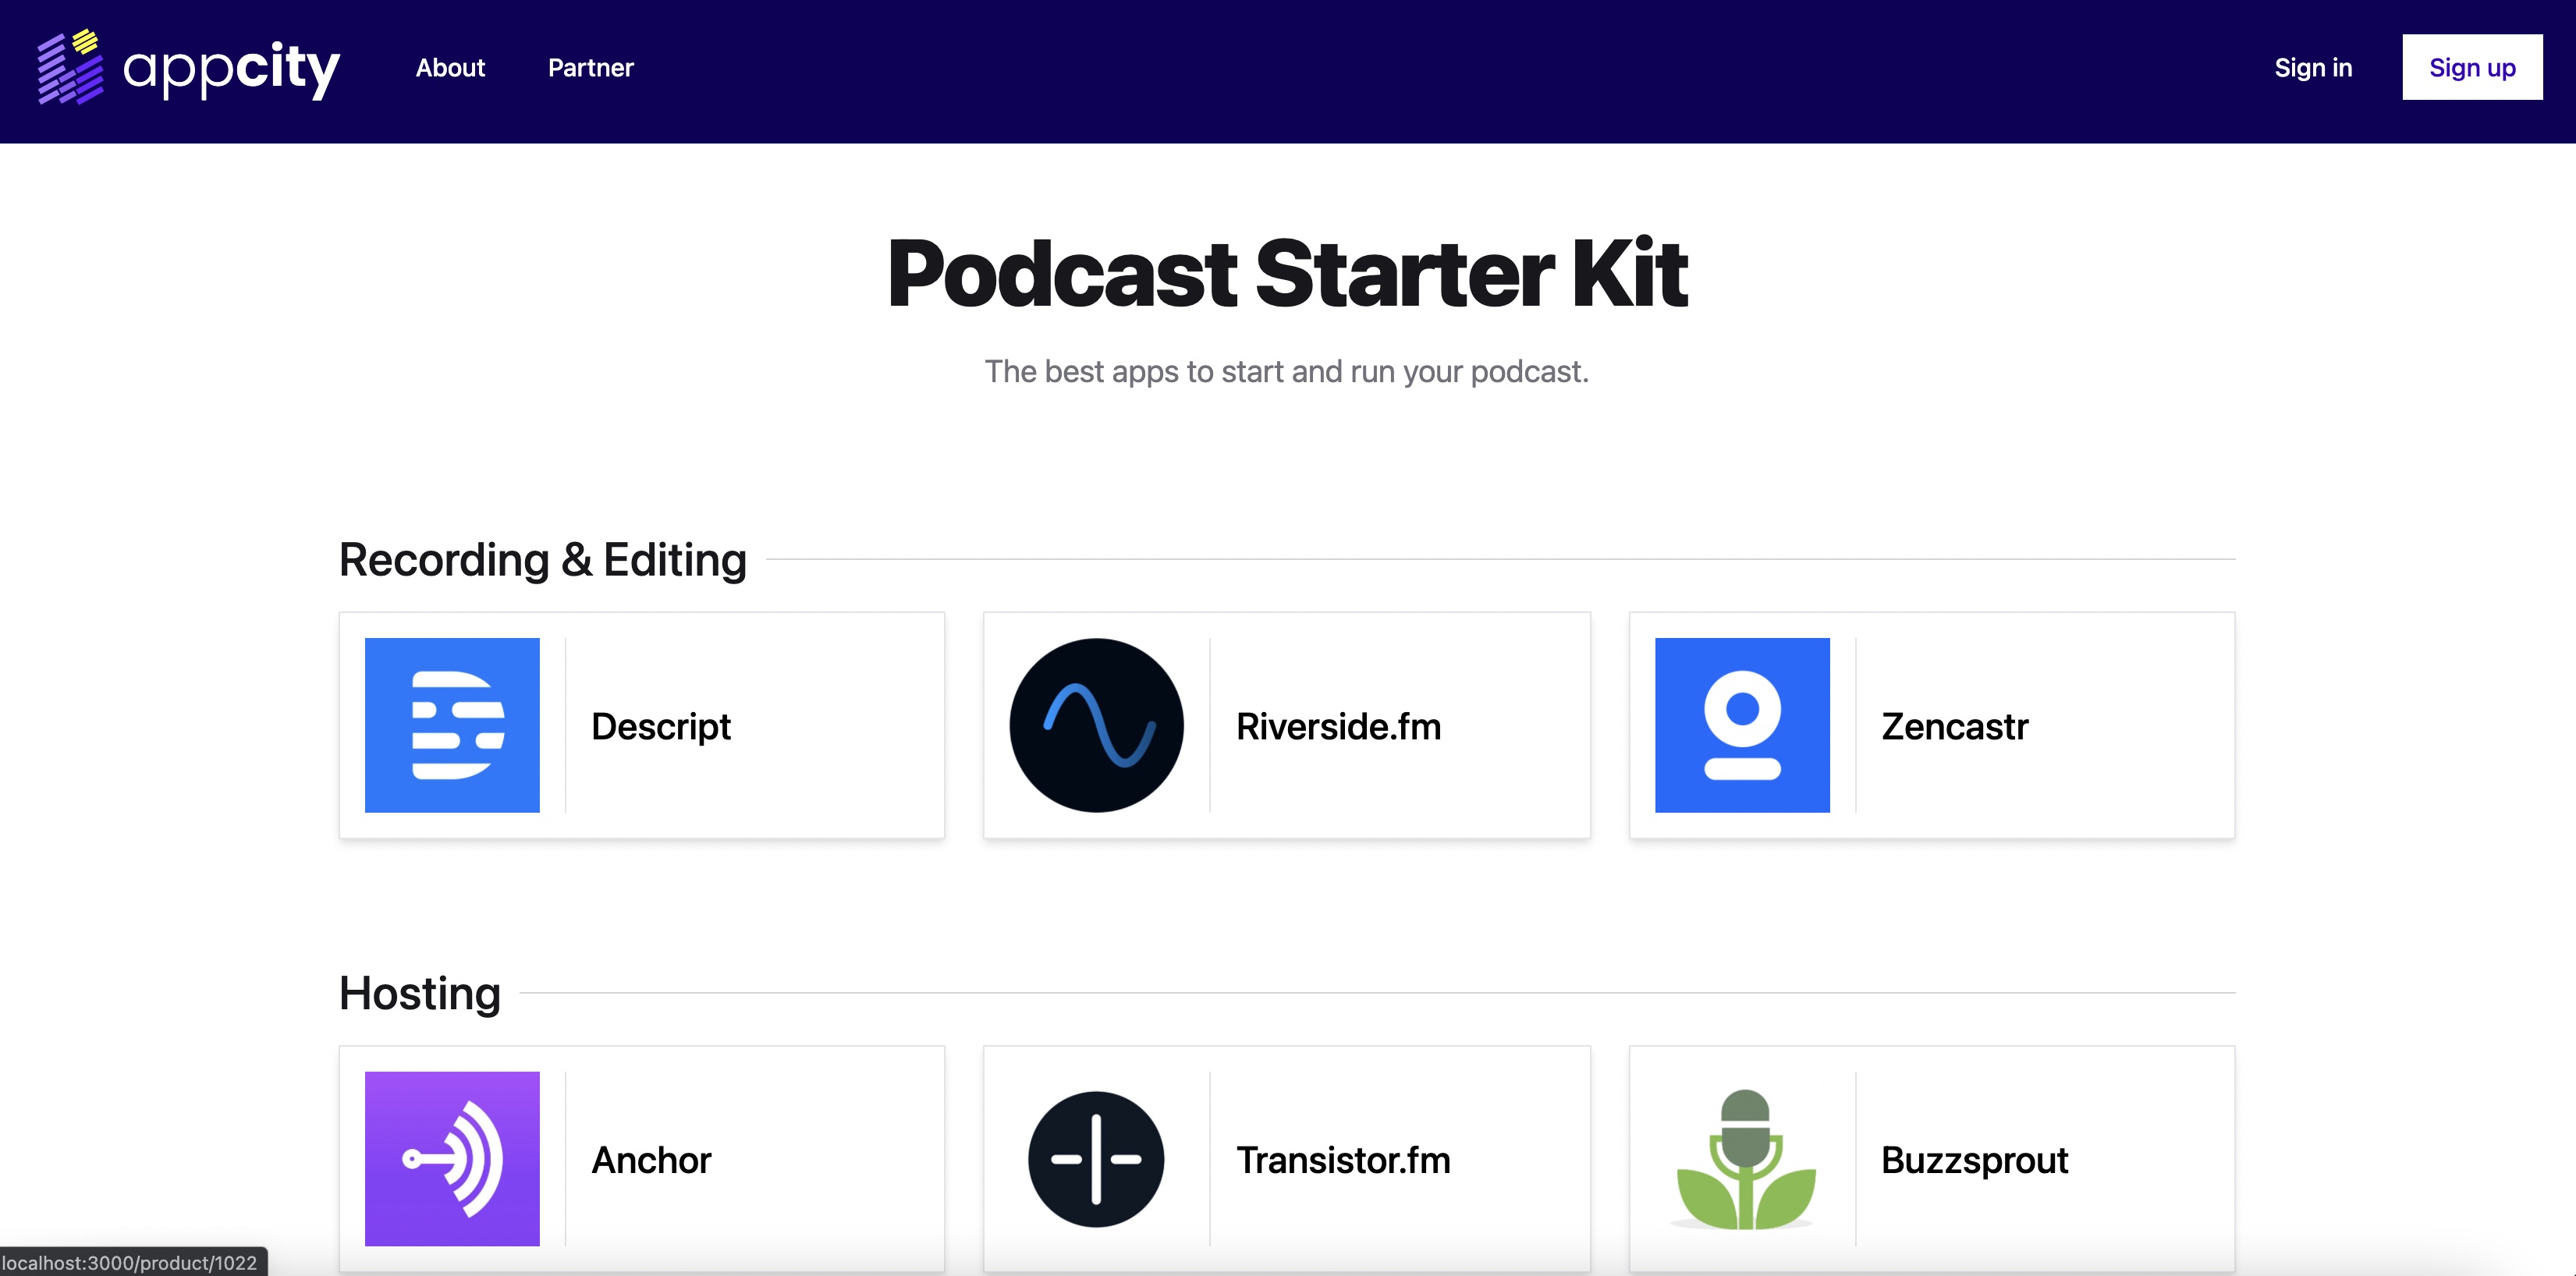 Podcast starter kit